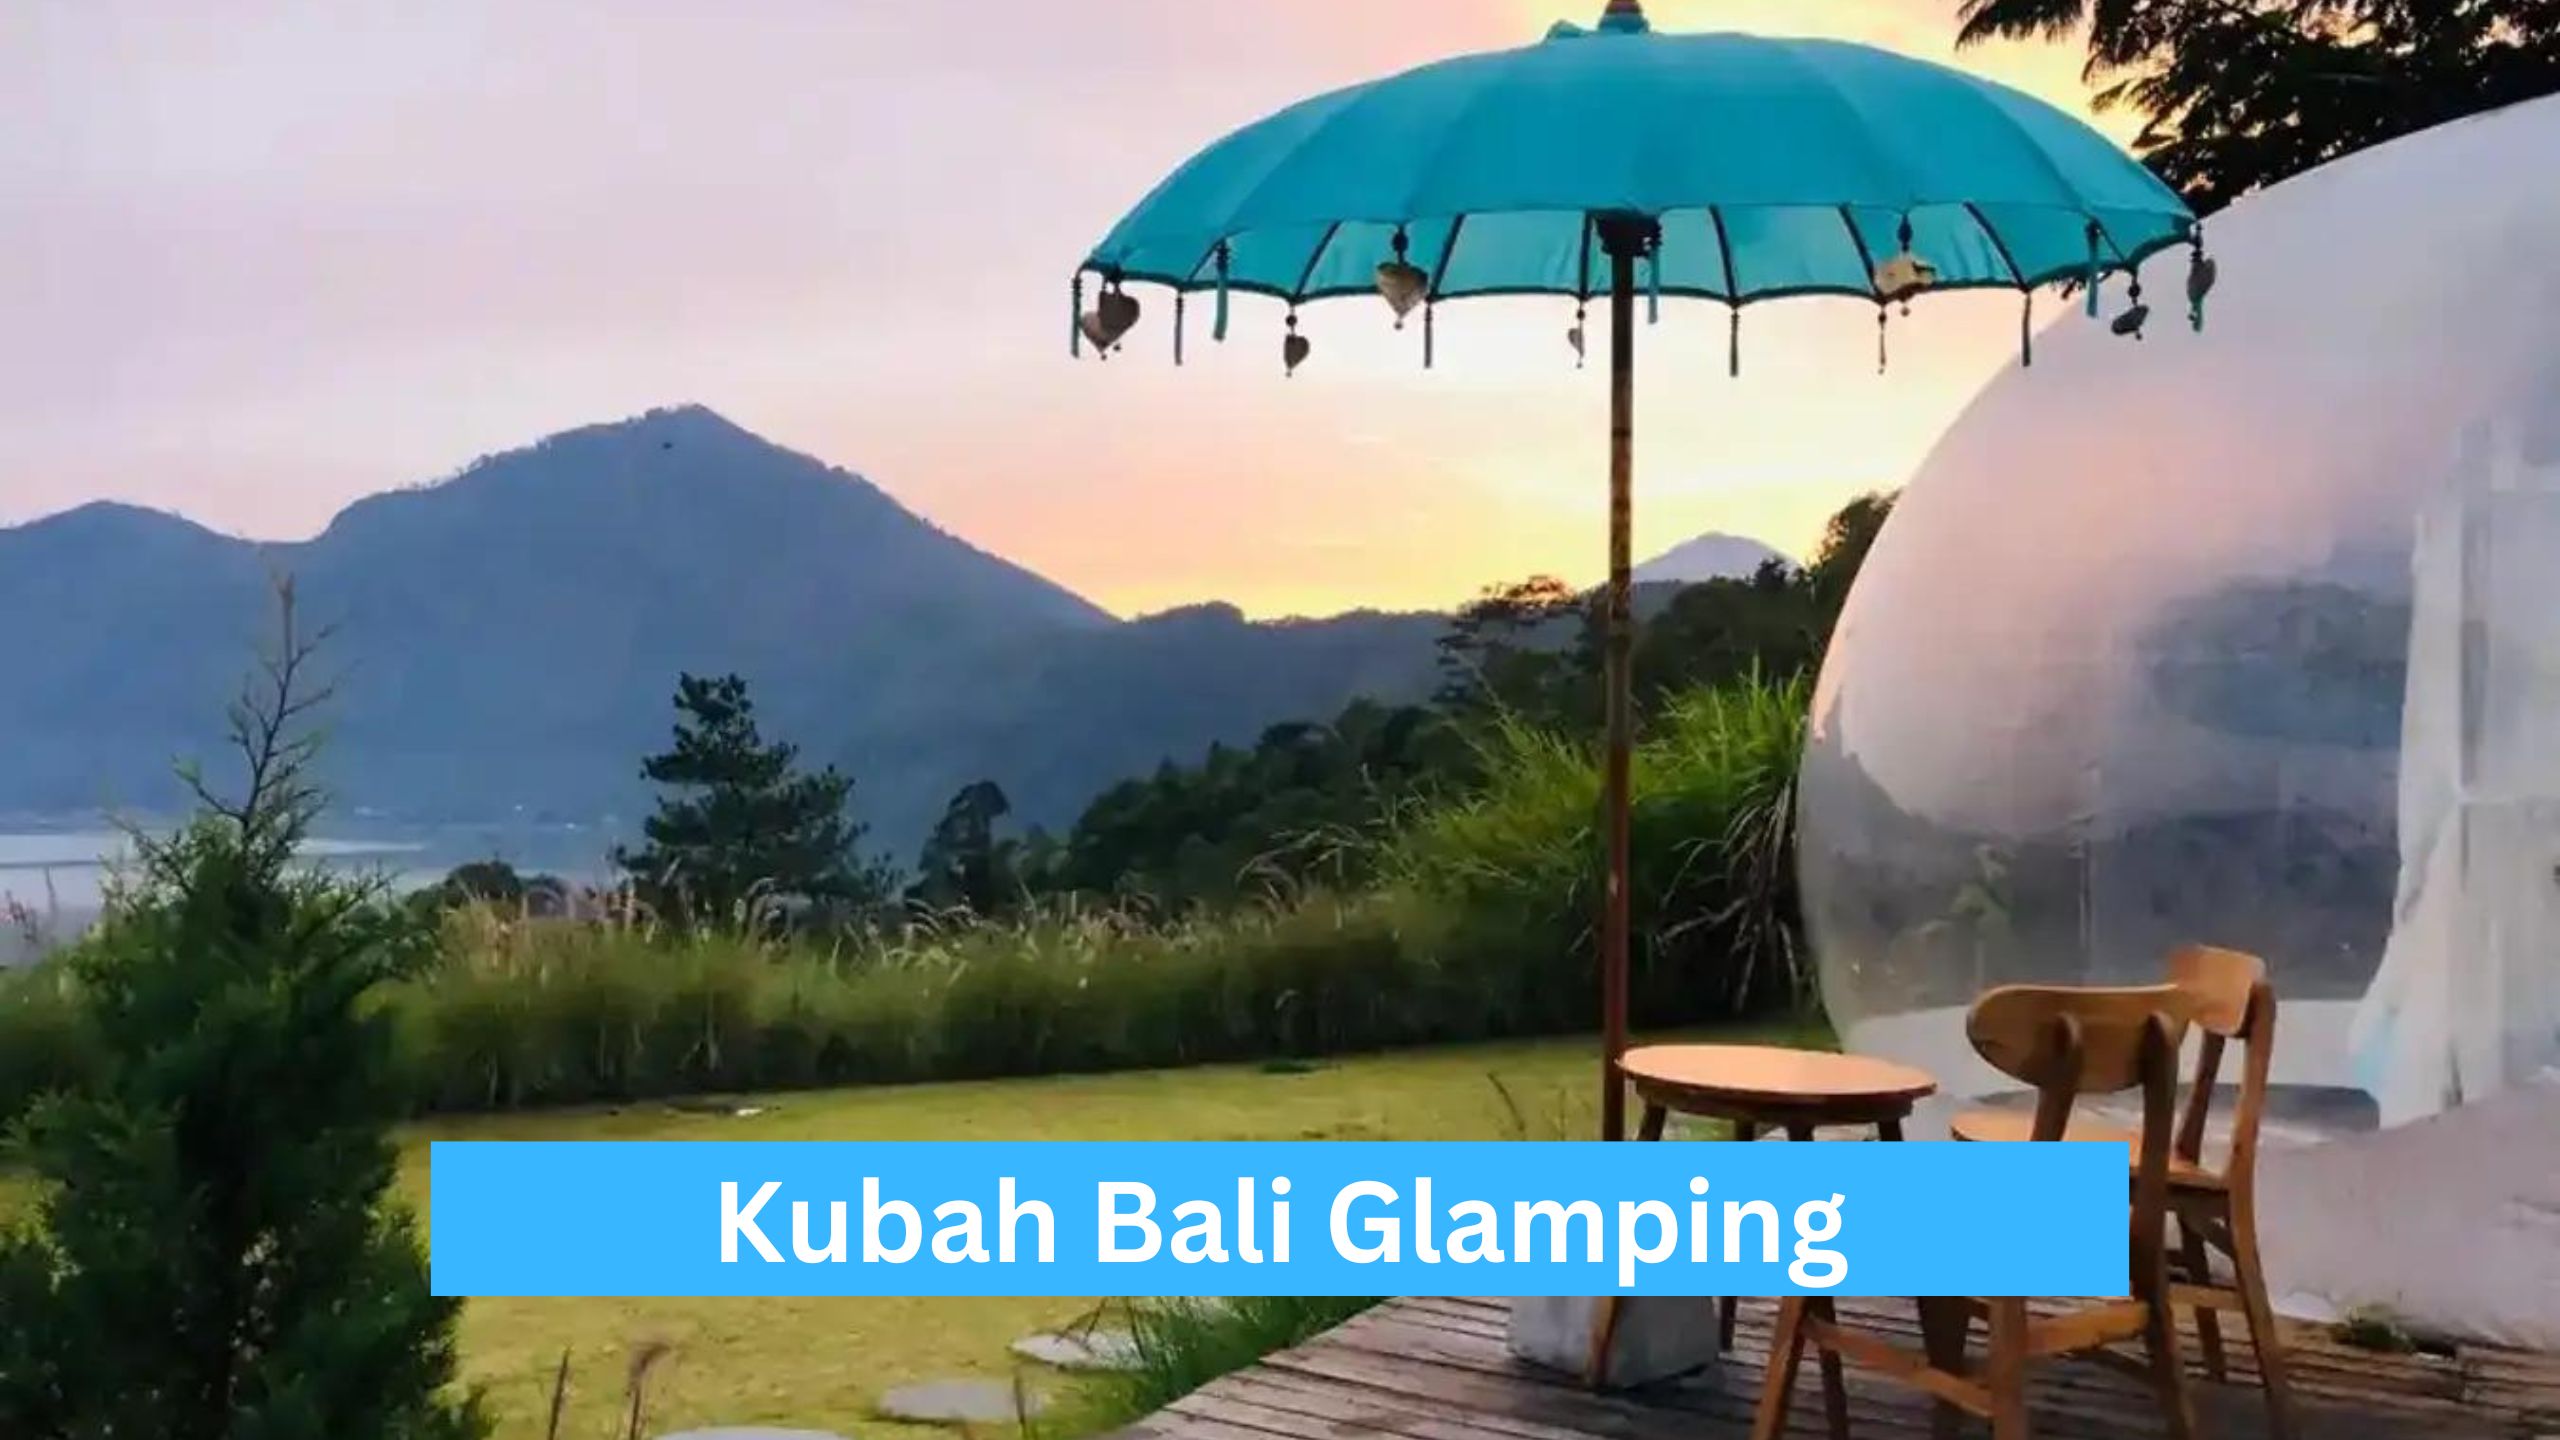 Kubah Bali Glamping